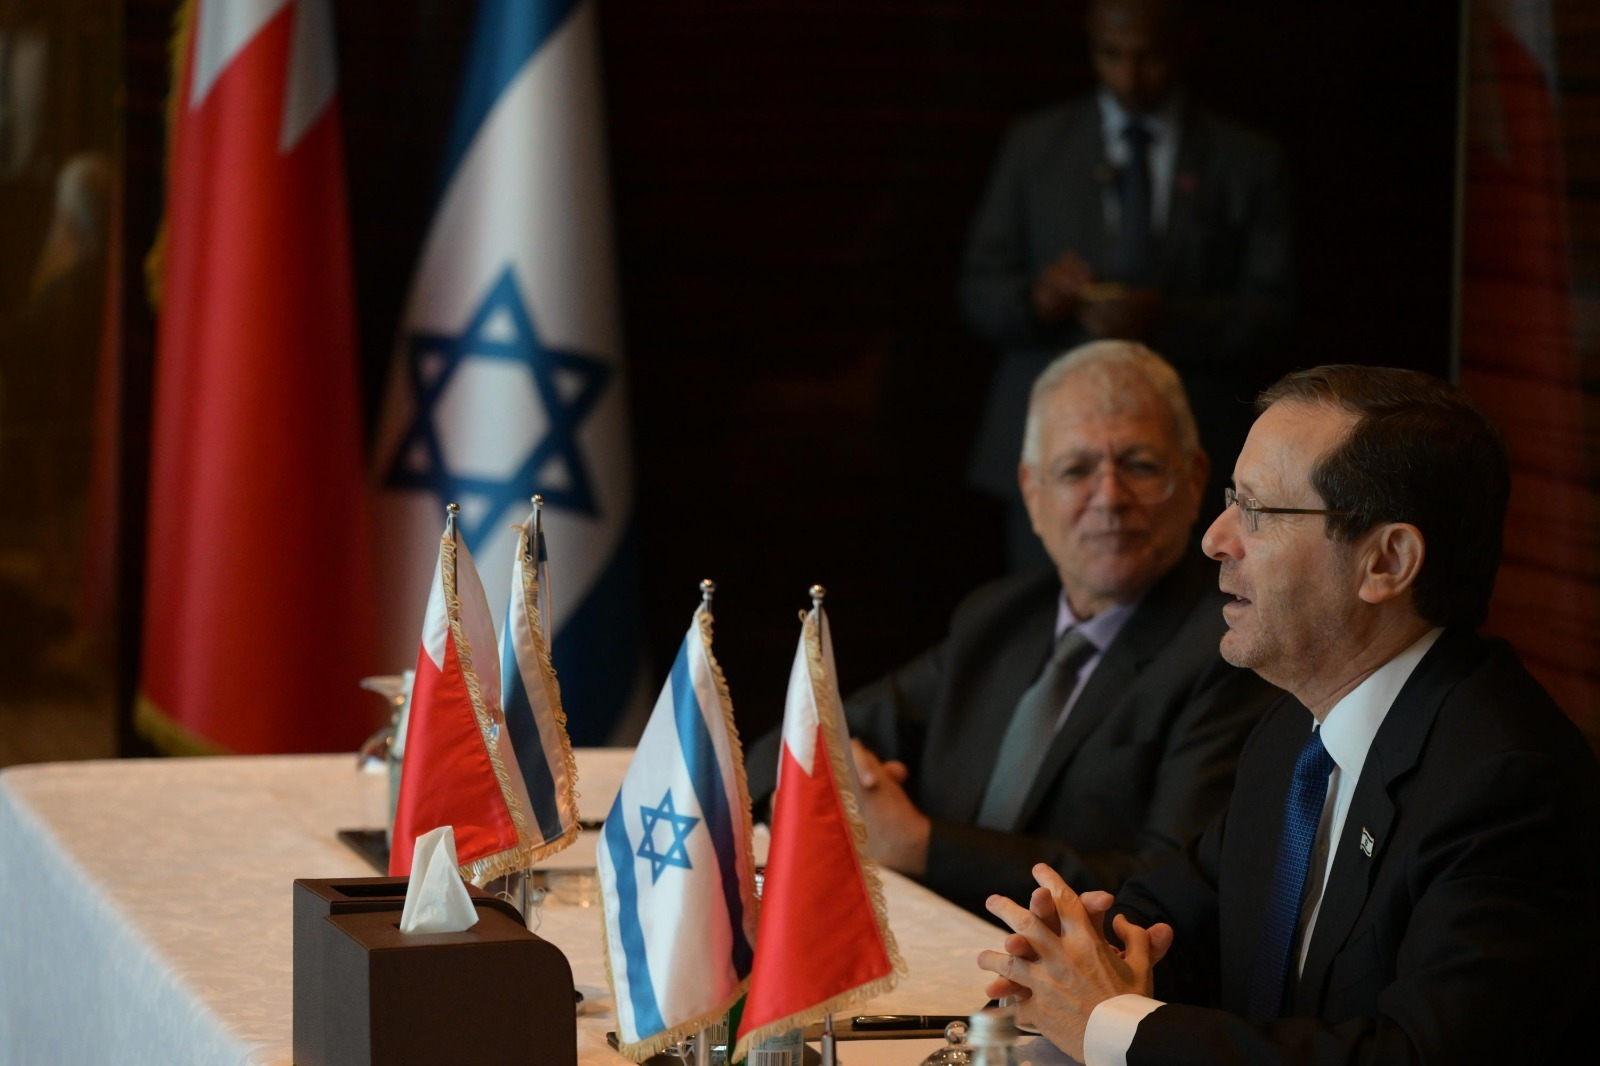 נשיא המדינה נפגש עם נציגי הקהילה היהודית בבחריין